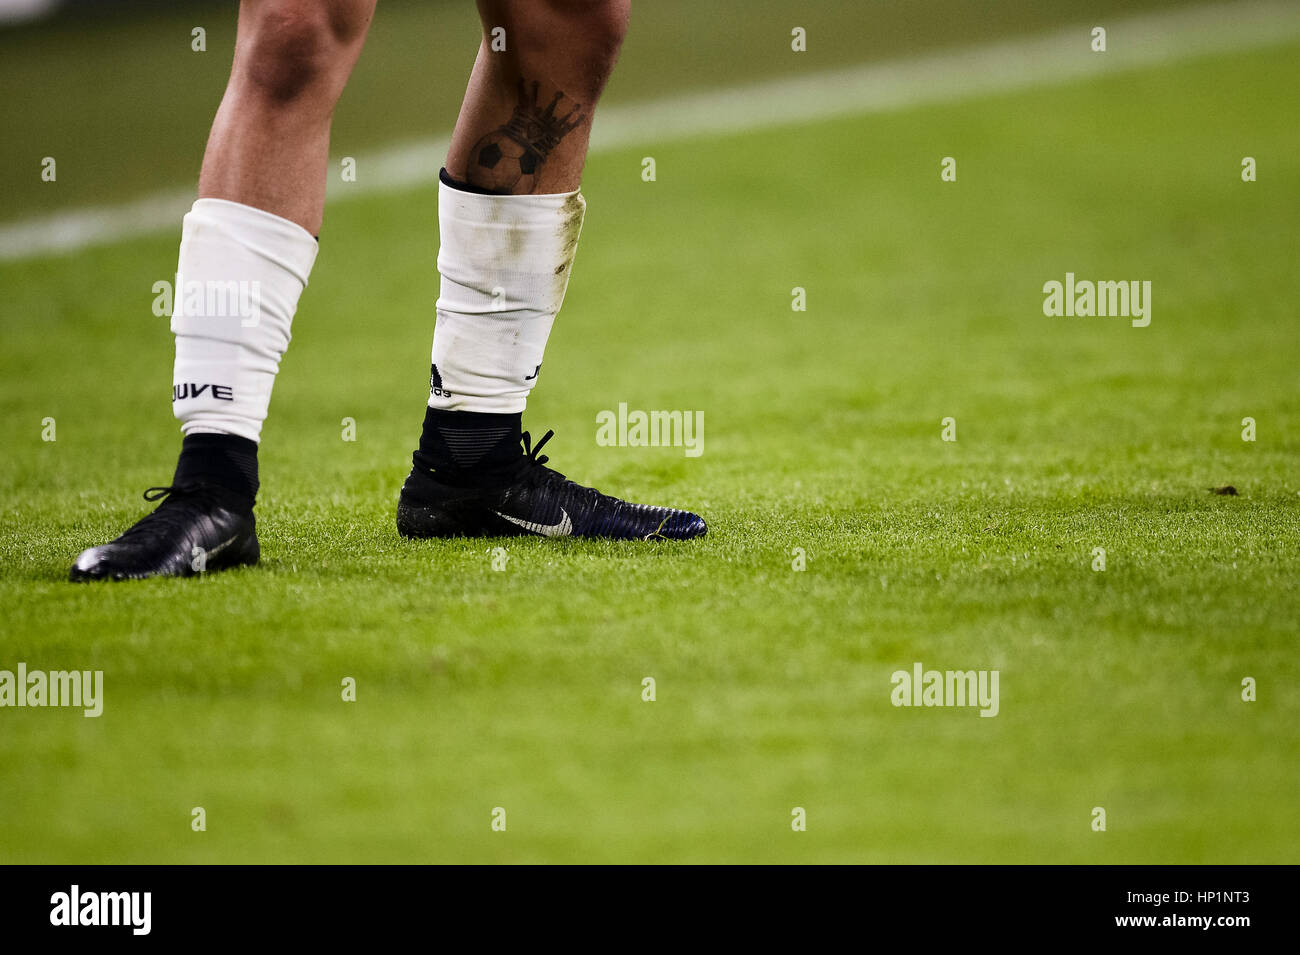 Italia. 17 Febrero, 2017. Tatuajes y zapatos de Paulo Dybala de Juventus fotografiado durante la serie en un partido fútbol entre la Juventus FC y el US Città Palermo.